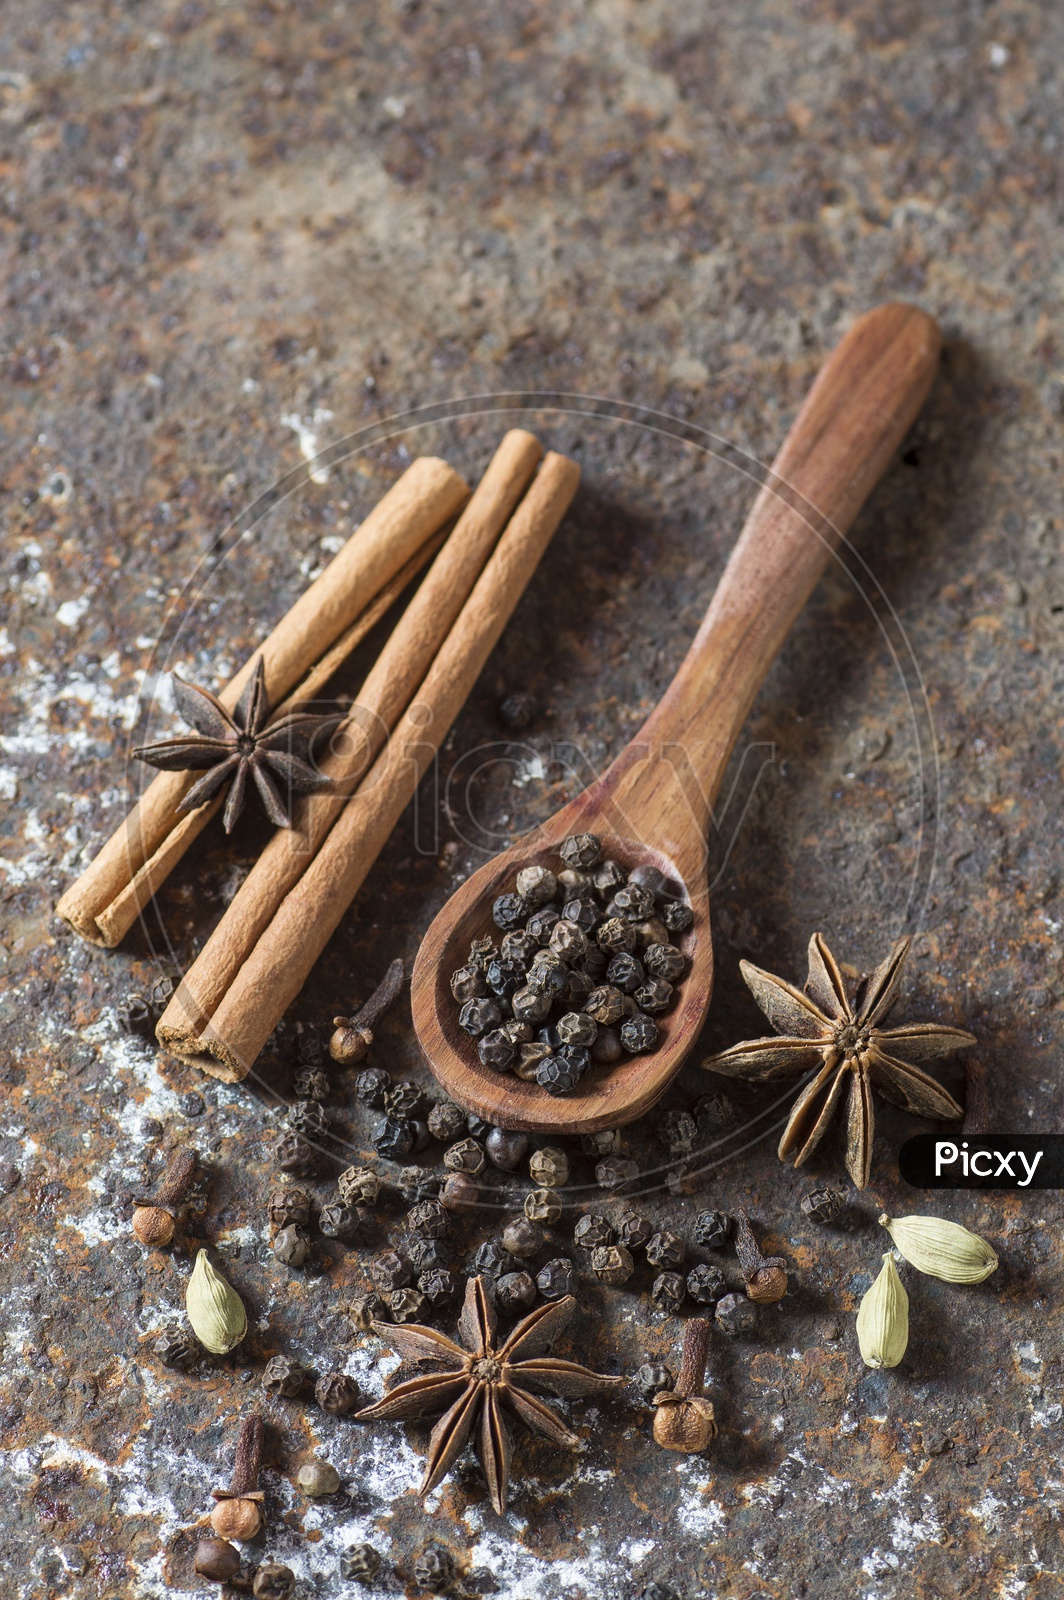 Black Pepper, Star Anise, Cinnamon sticks, Cloves, Elachi